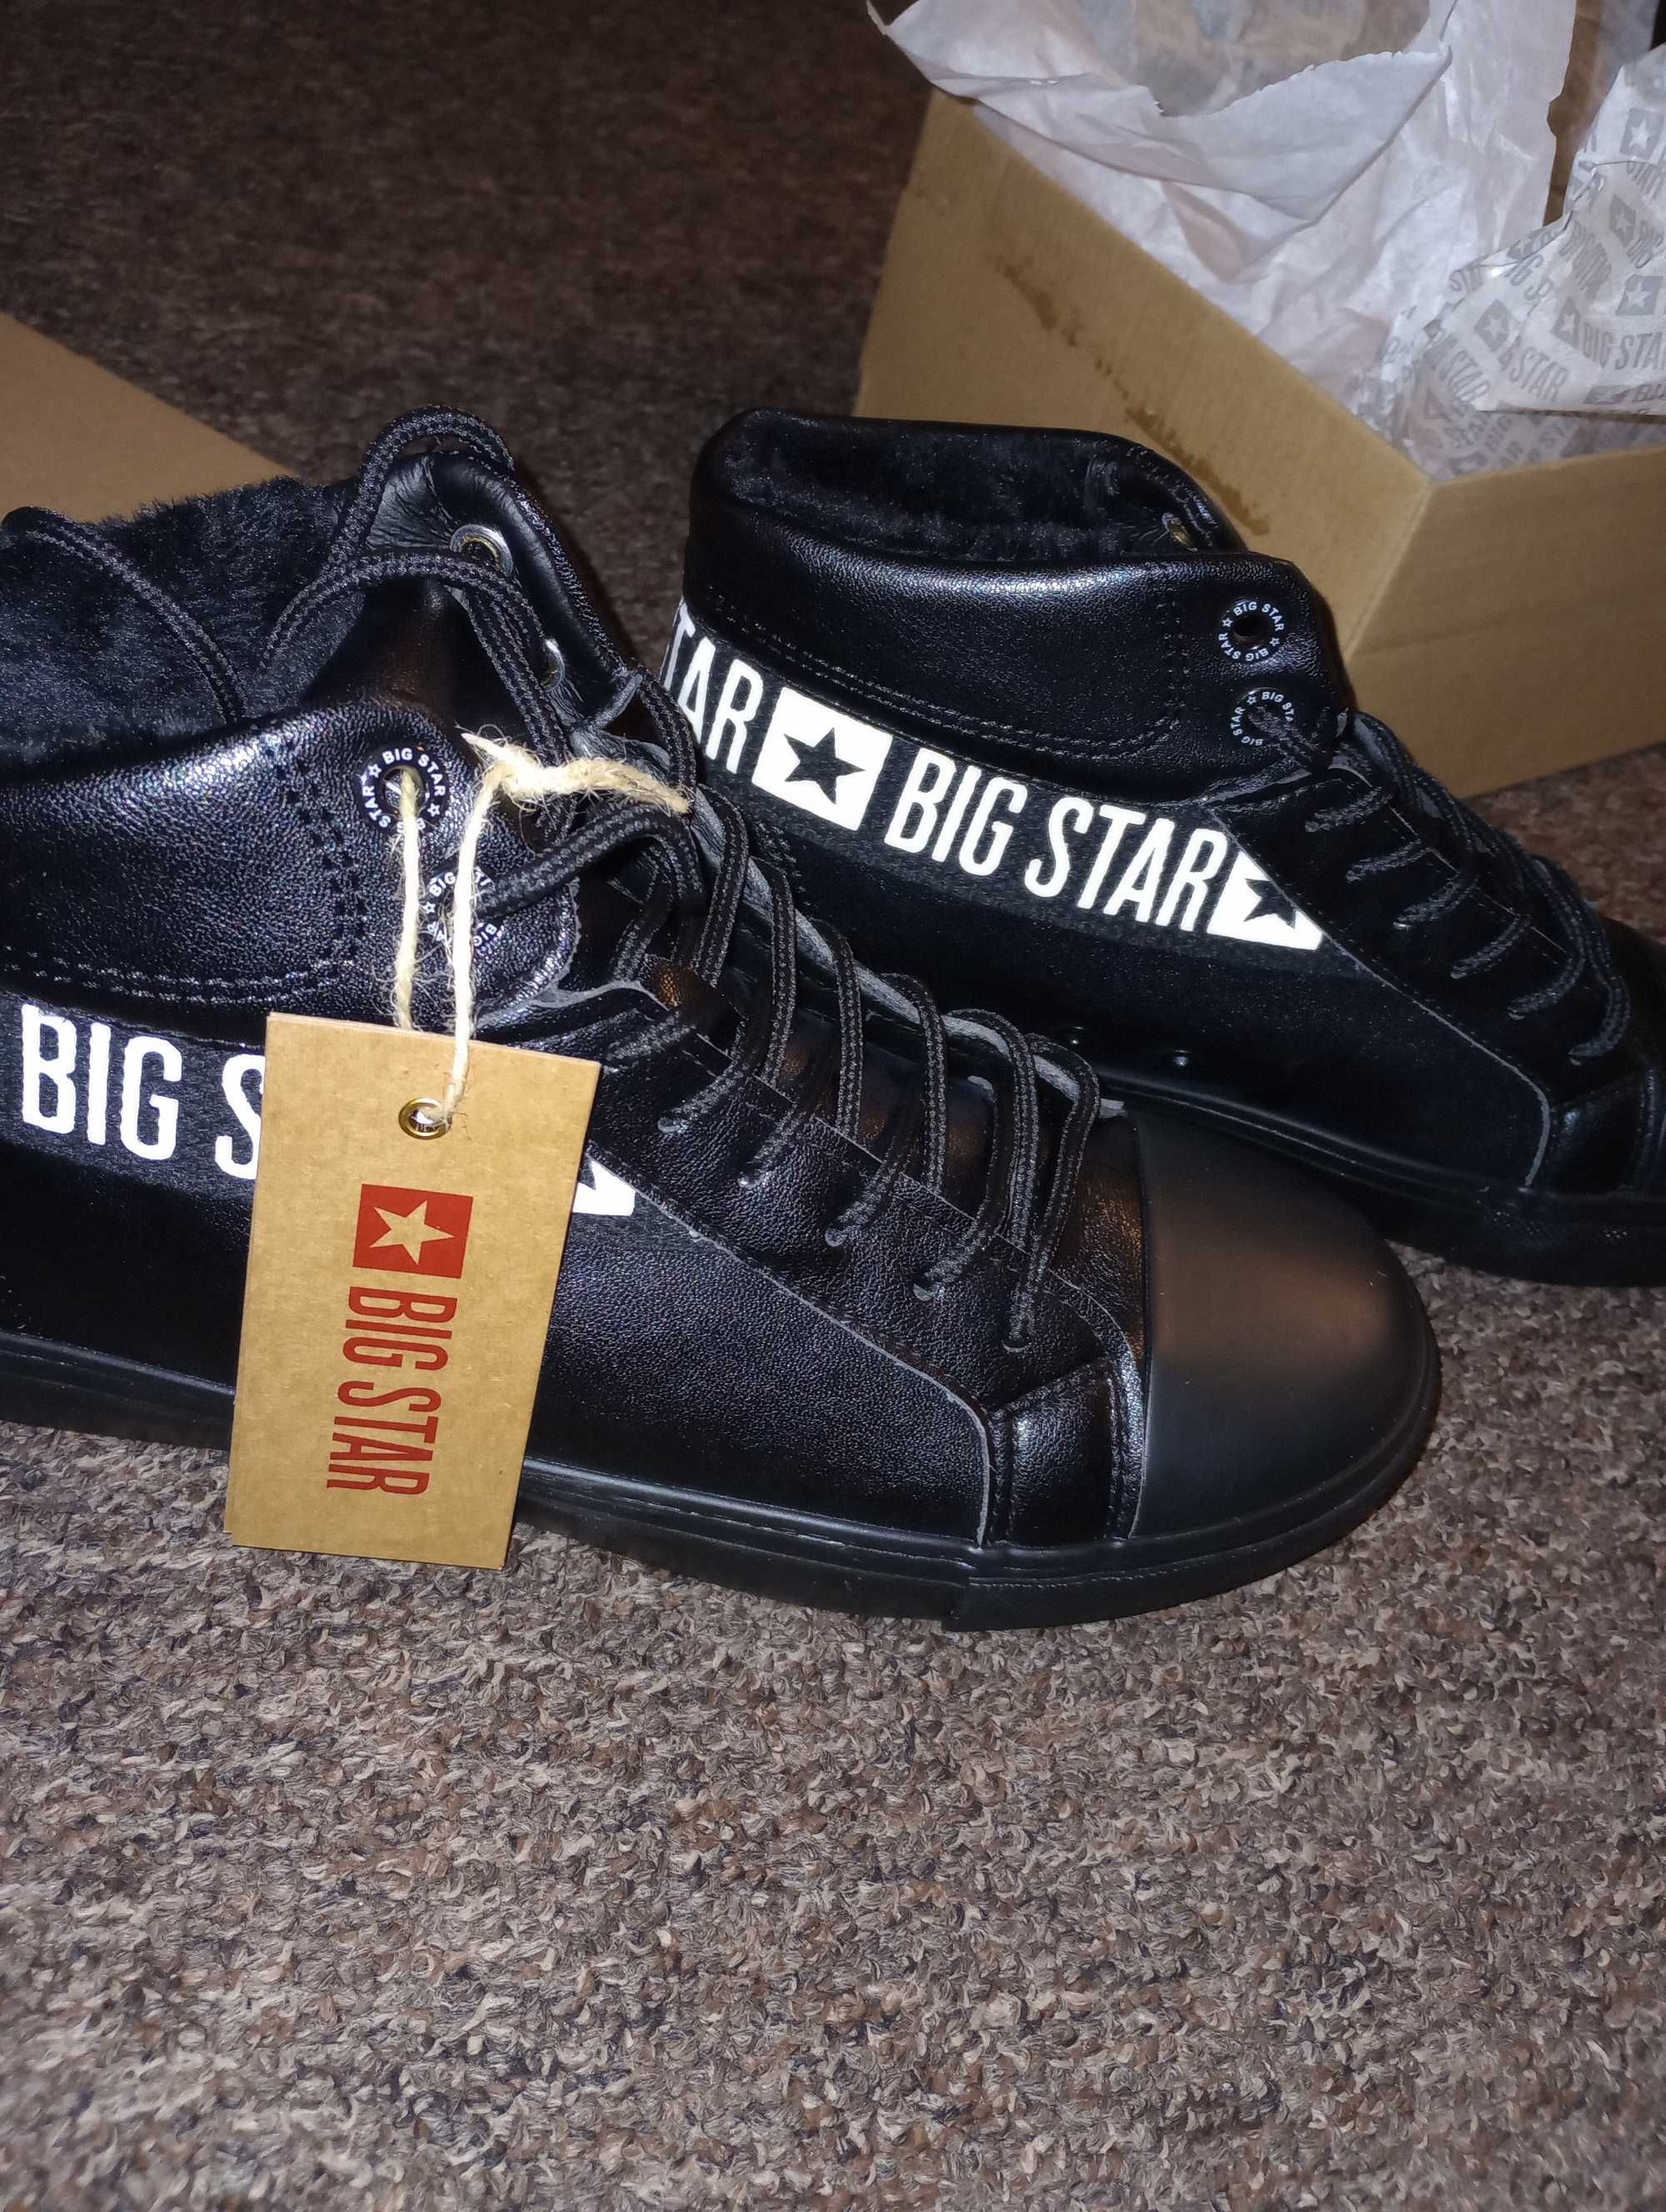 Sprzedam buty Big Star rozmiar 42 nowe